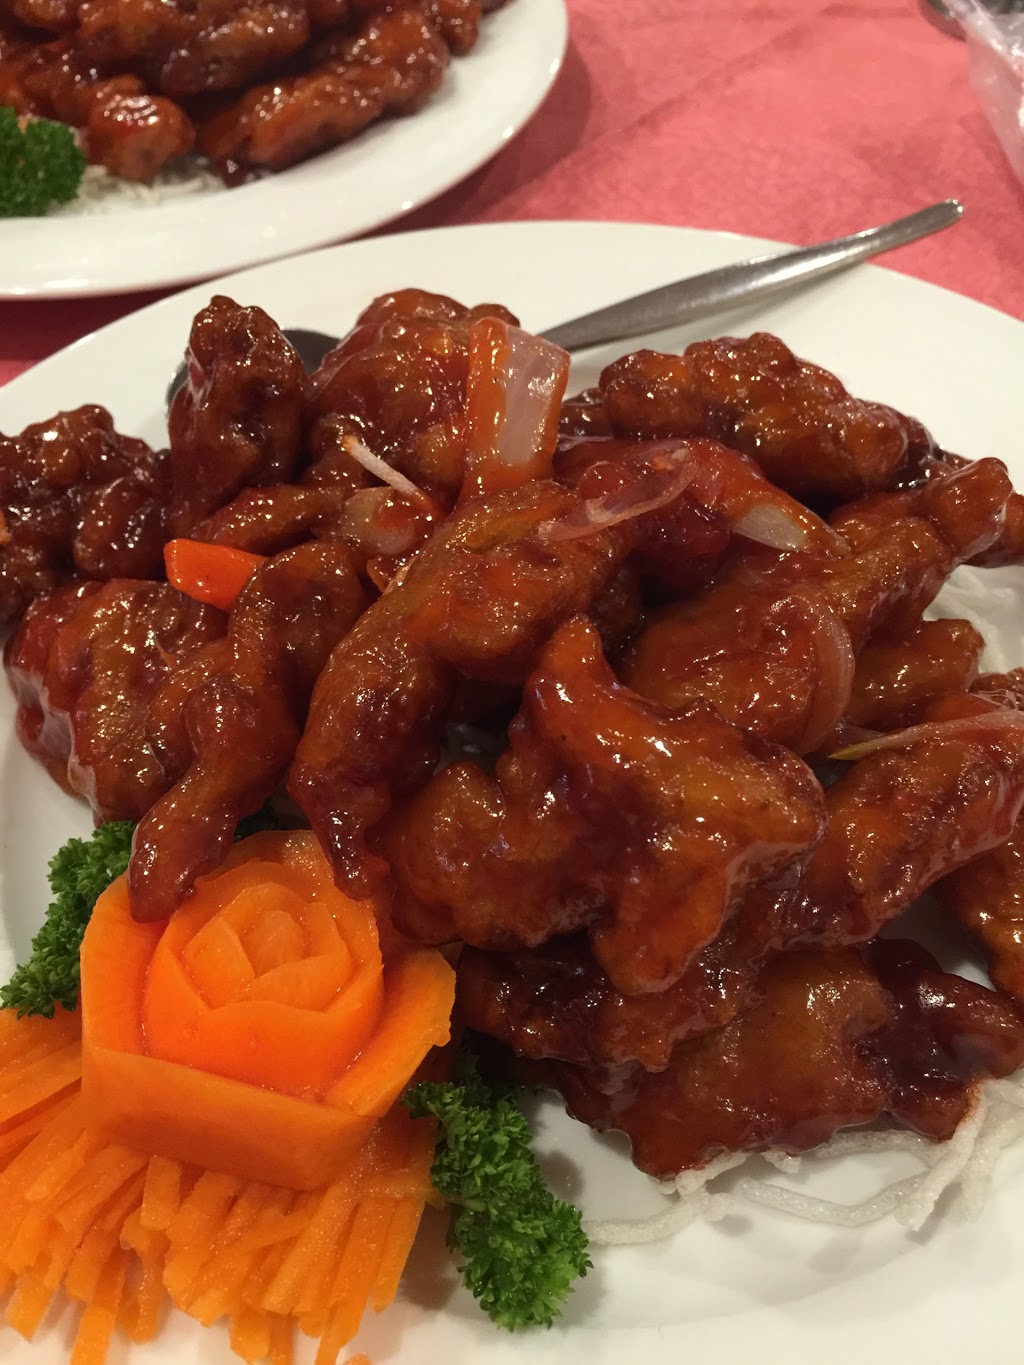 The Camellia Chinese Restaurant | restaurant | 384 Auburn St, Goulburn NSW 2580, Australia | 0248216688 OR +61 2 4821 6688